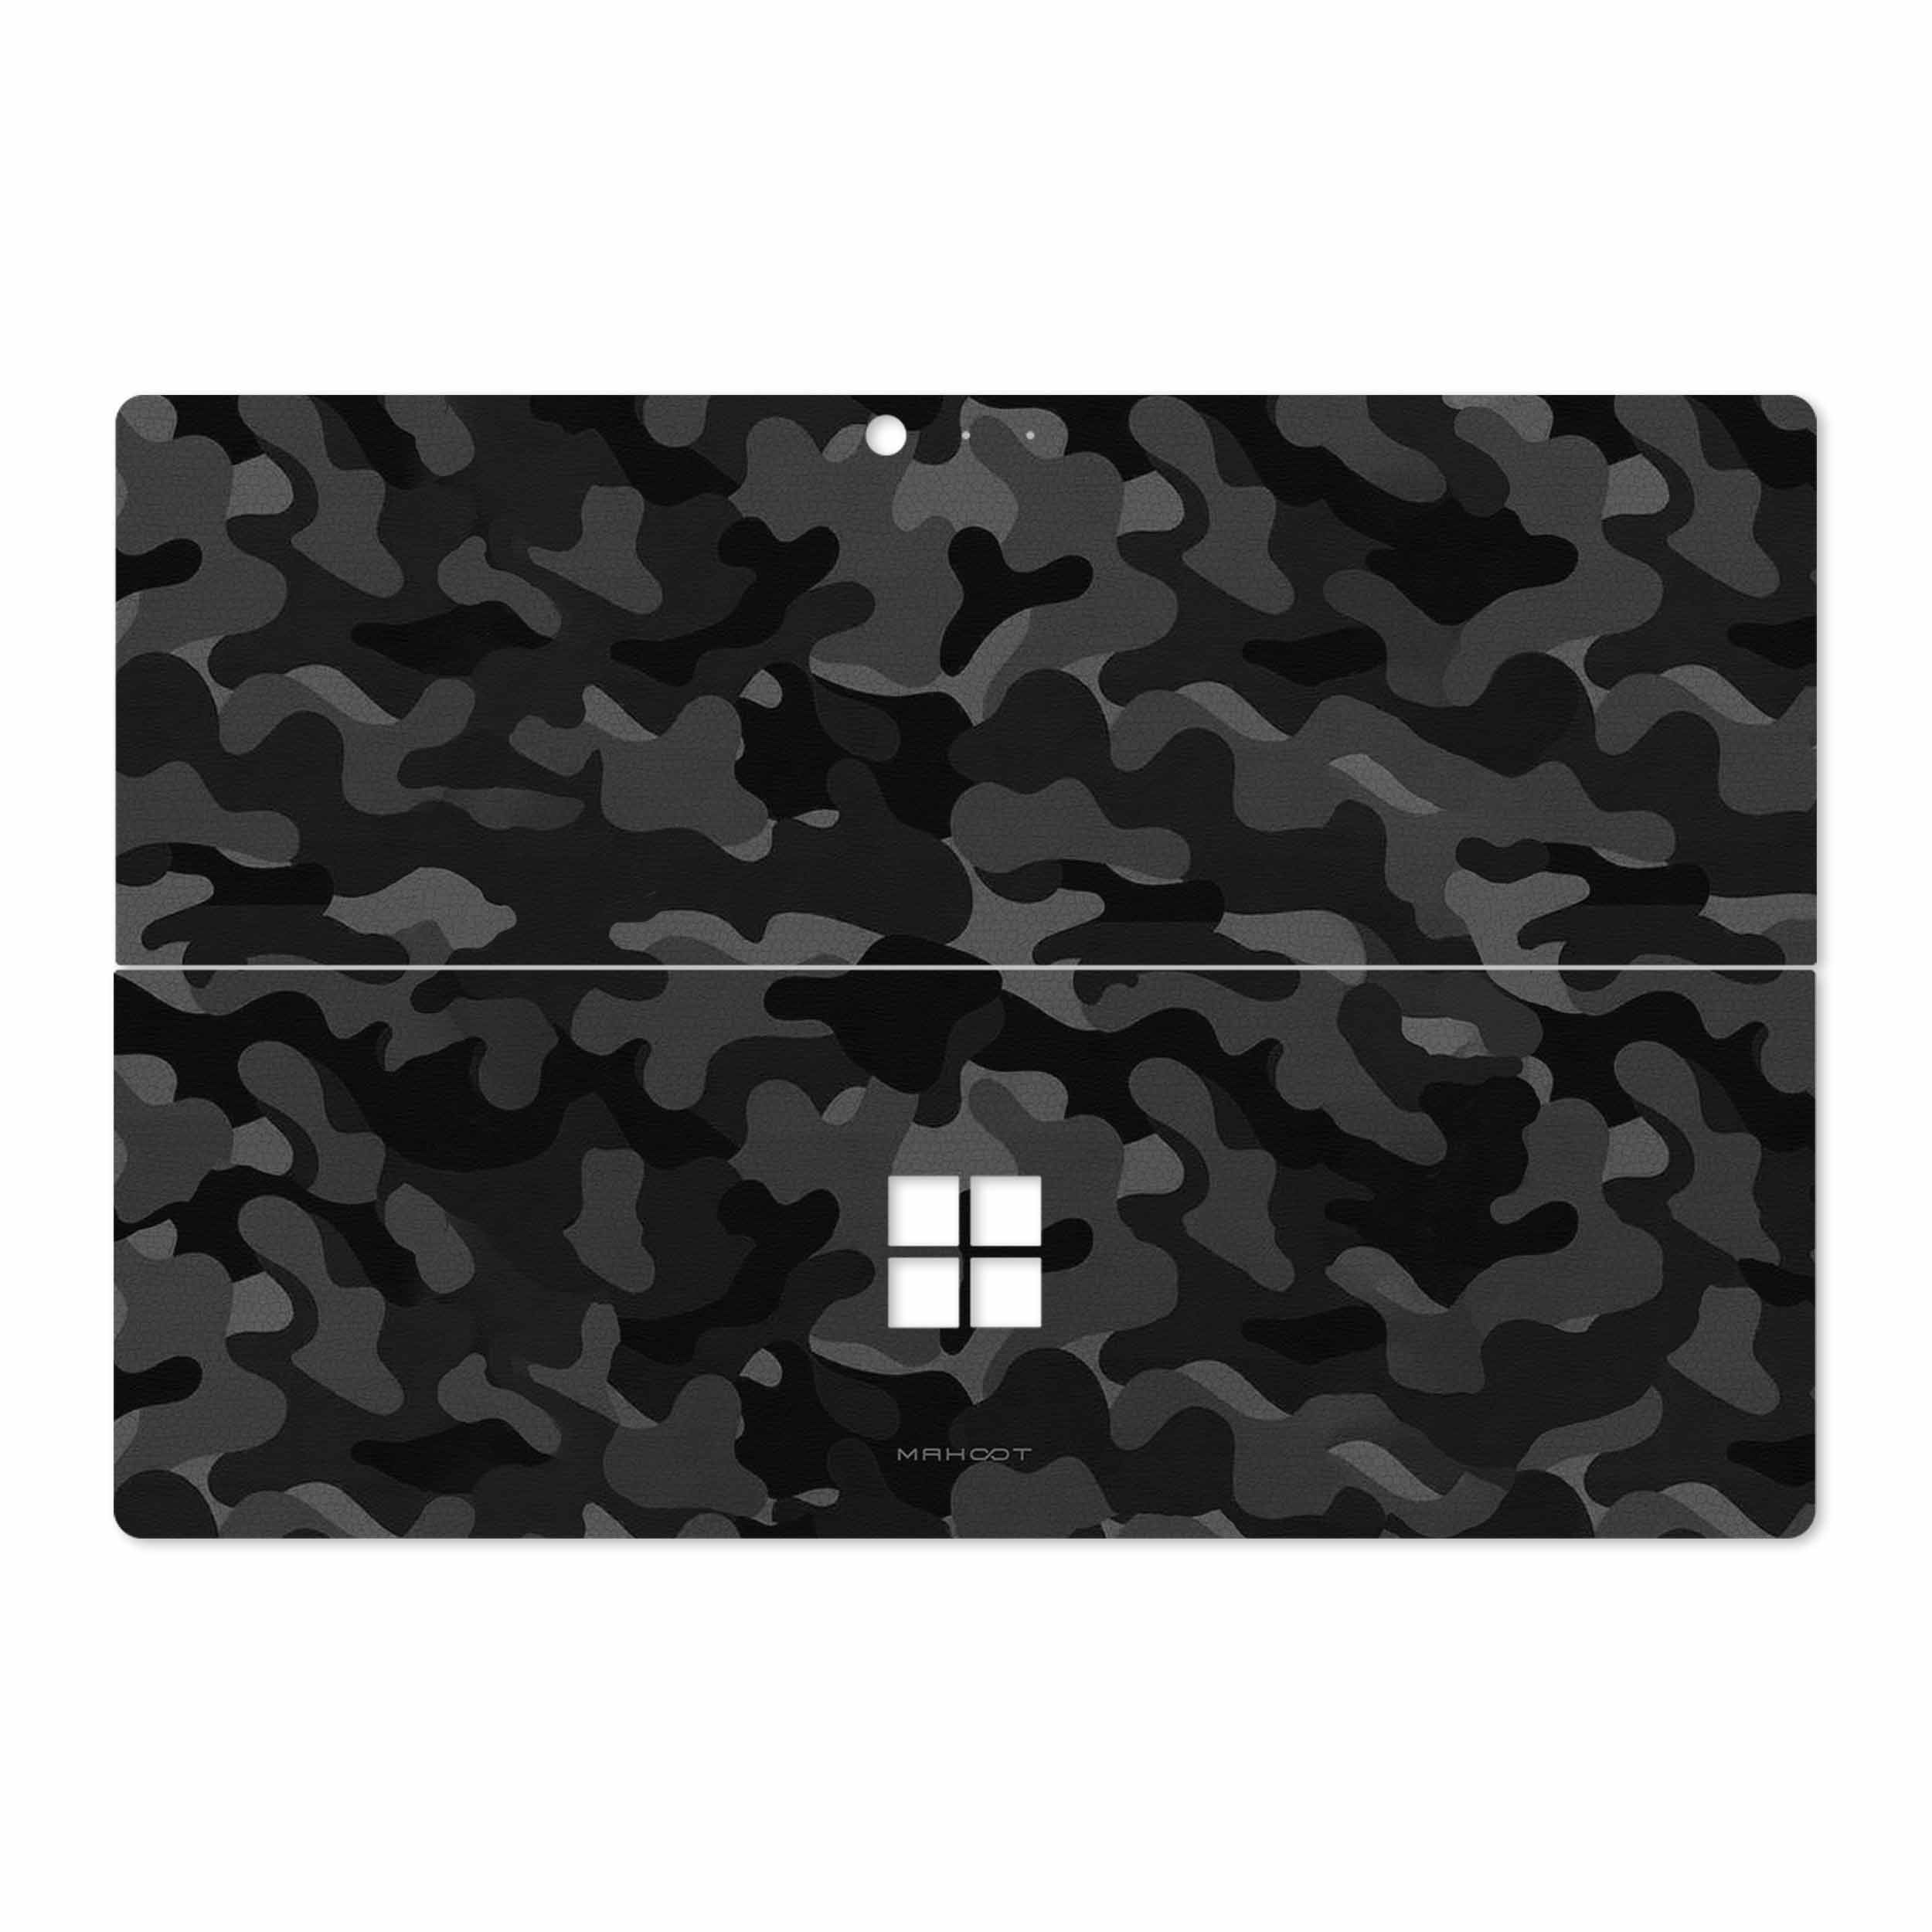 نقد و بررسی برچسب پوششی ماهوت مدل Night-Army مناسب برای تبلت مایکروسافت Surface Pro 4 2015 توسط خریداران